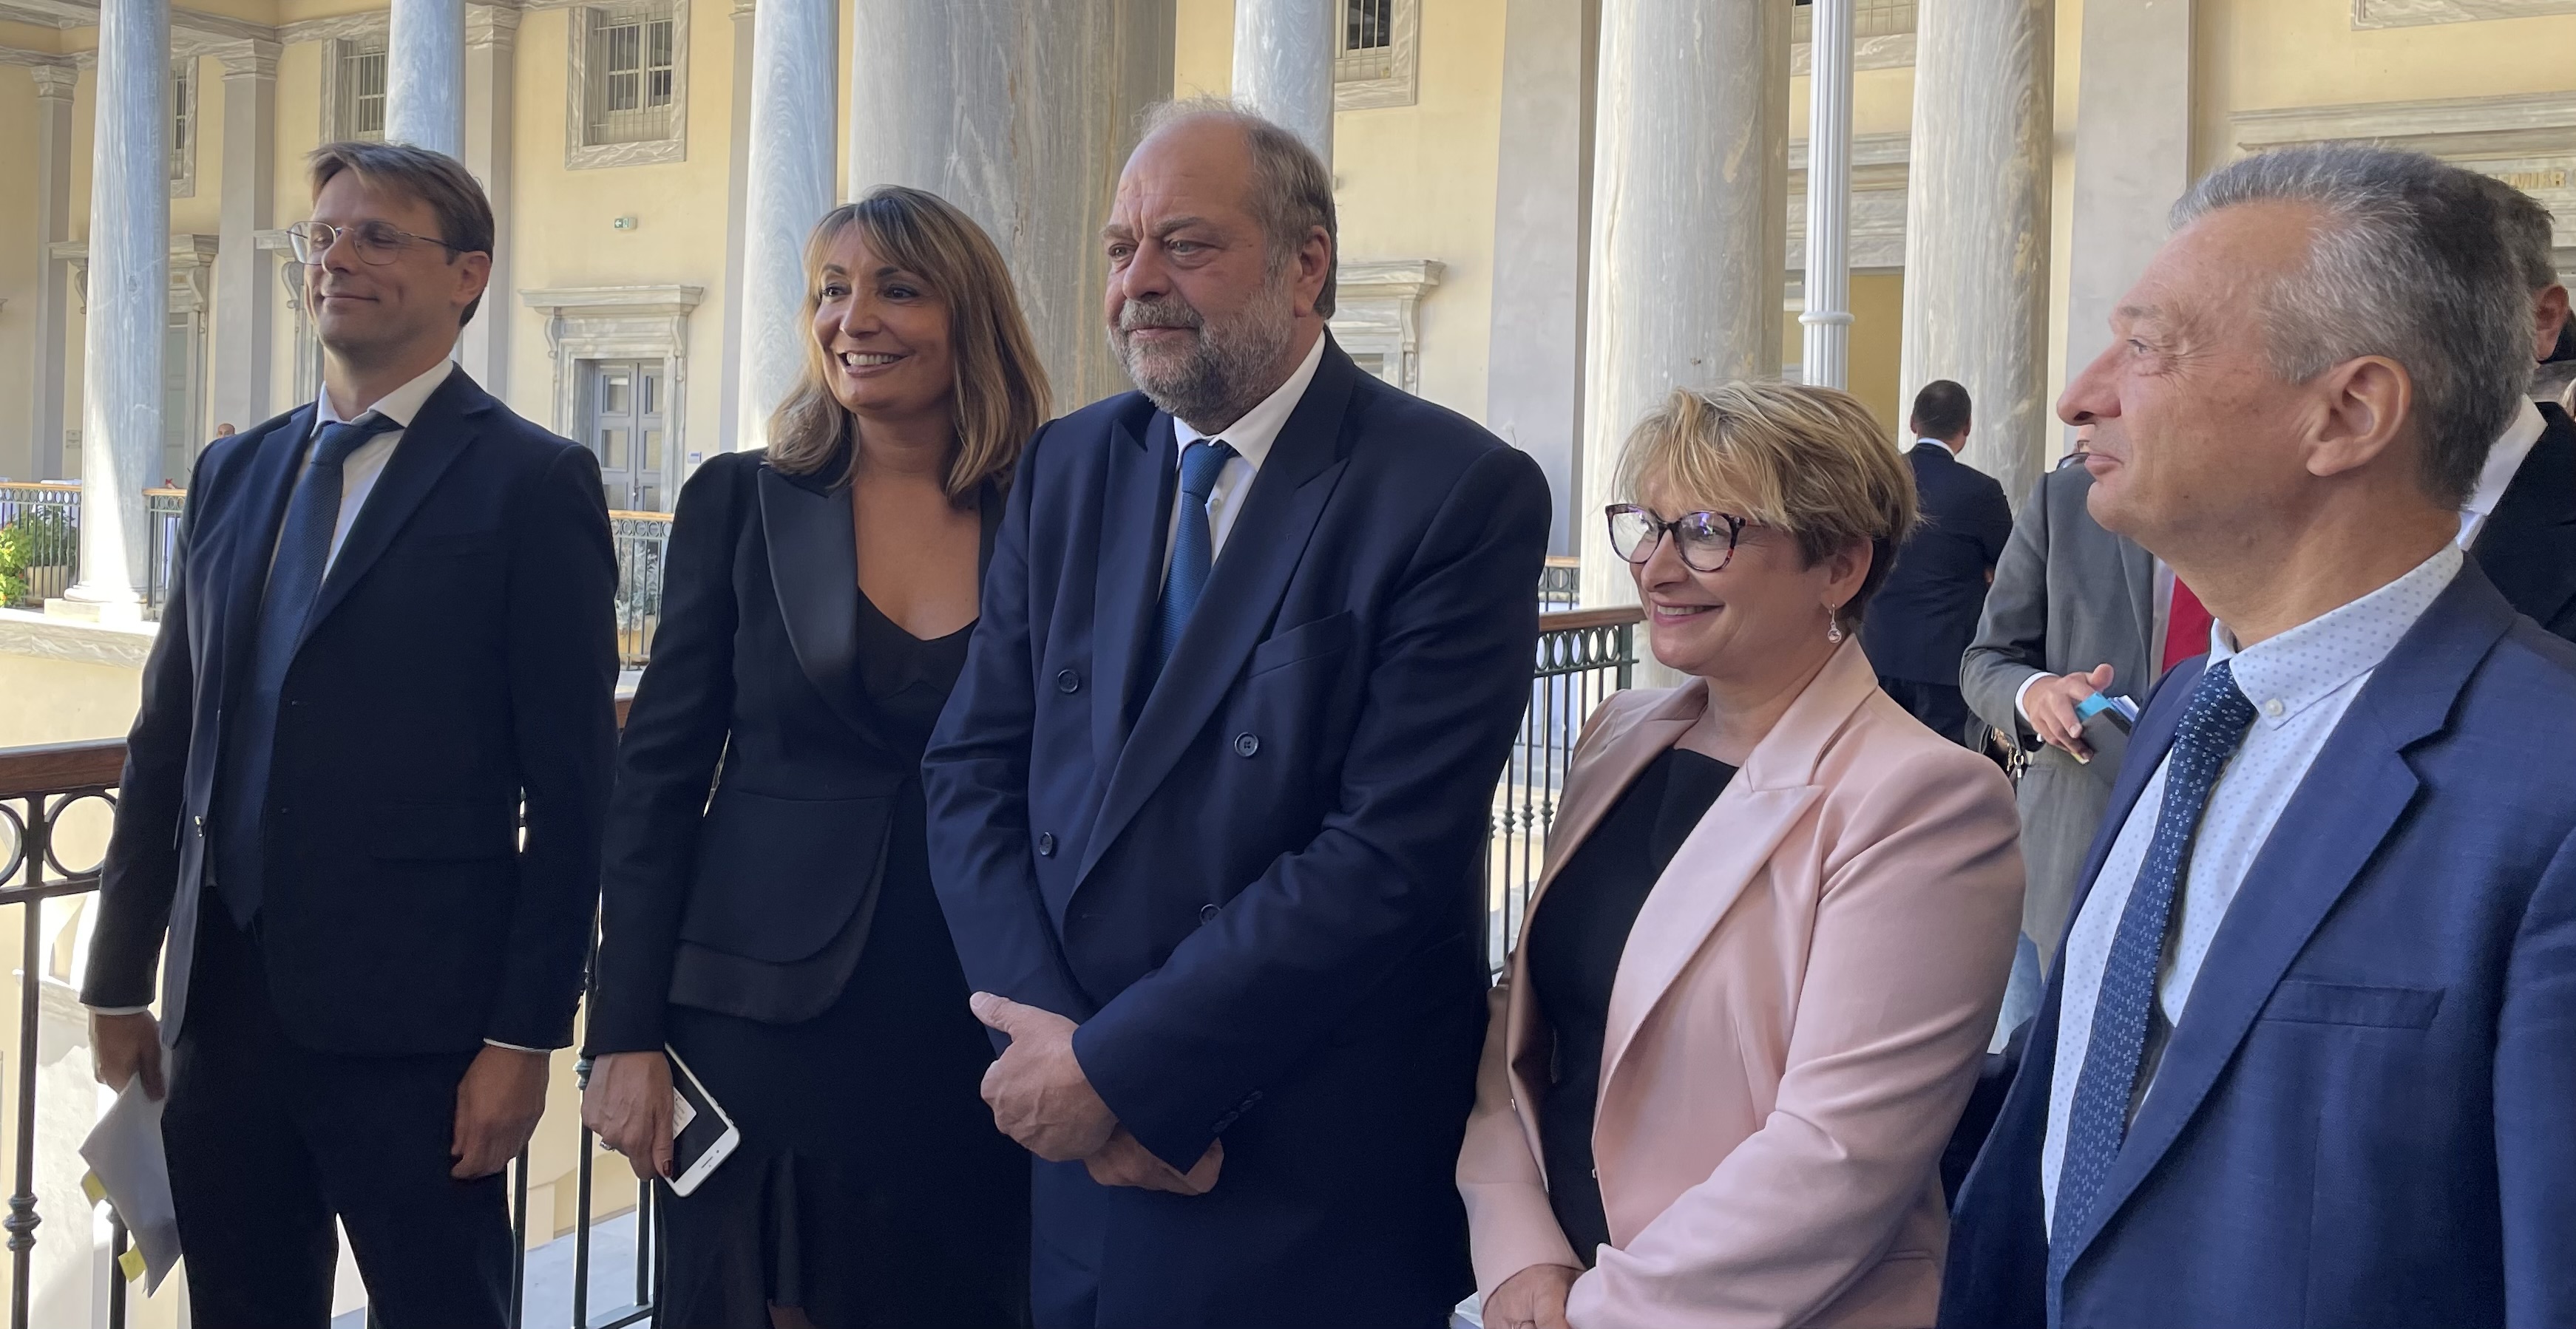 La nouvelle première présidente de la Cour d’appel de Bastia, Hélène Davo, entourée du Garde des Sceaux, Eric Dupony-Moretti, et des magistrats du Siège et du Parquet. Photo CNI.